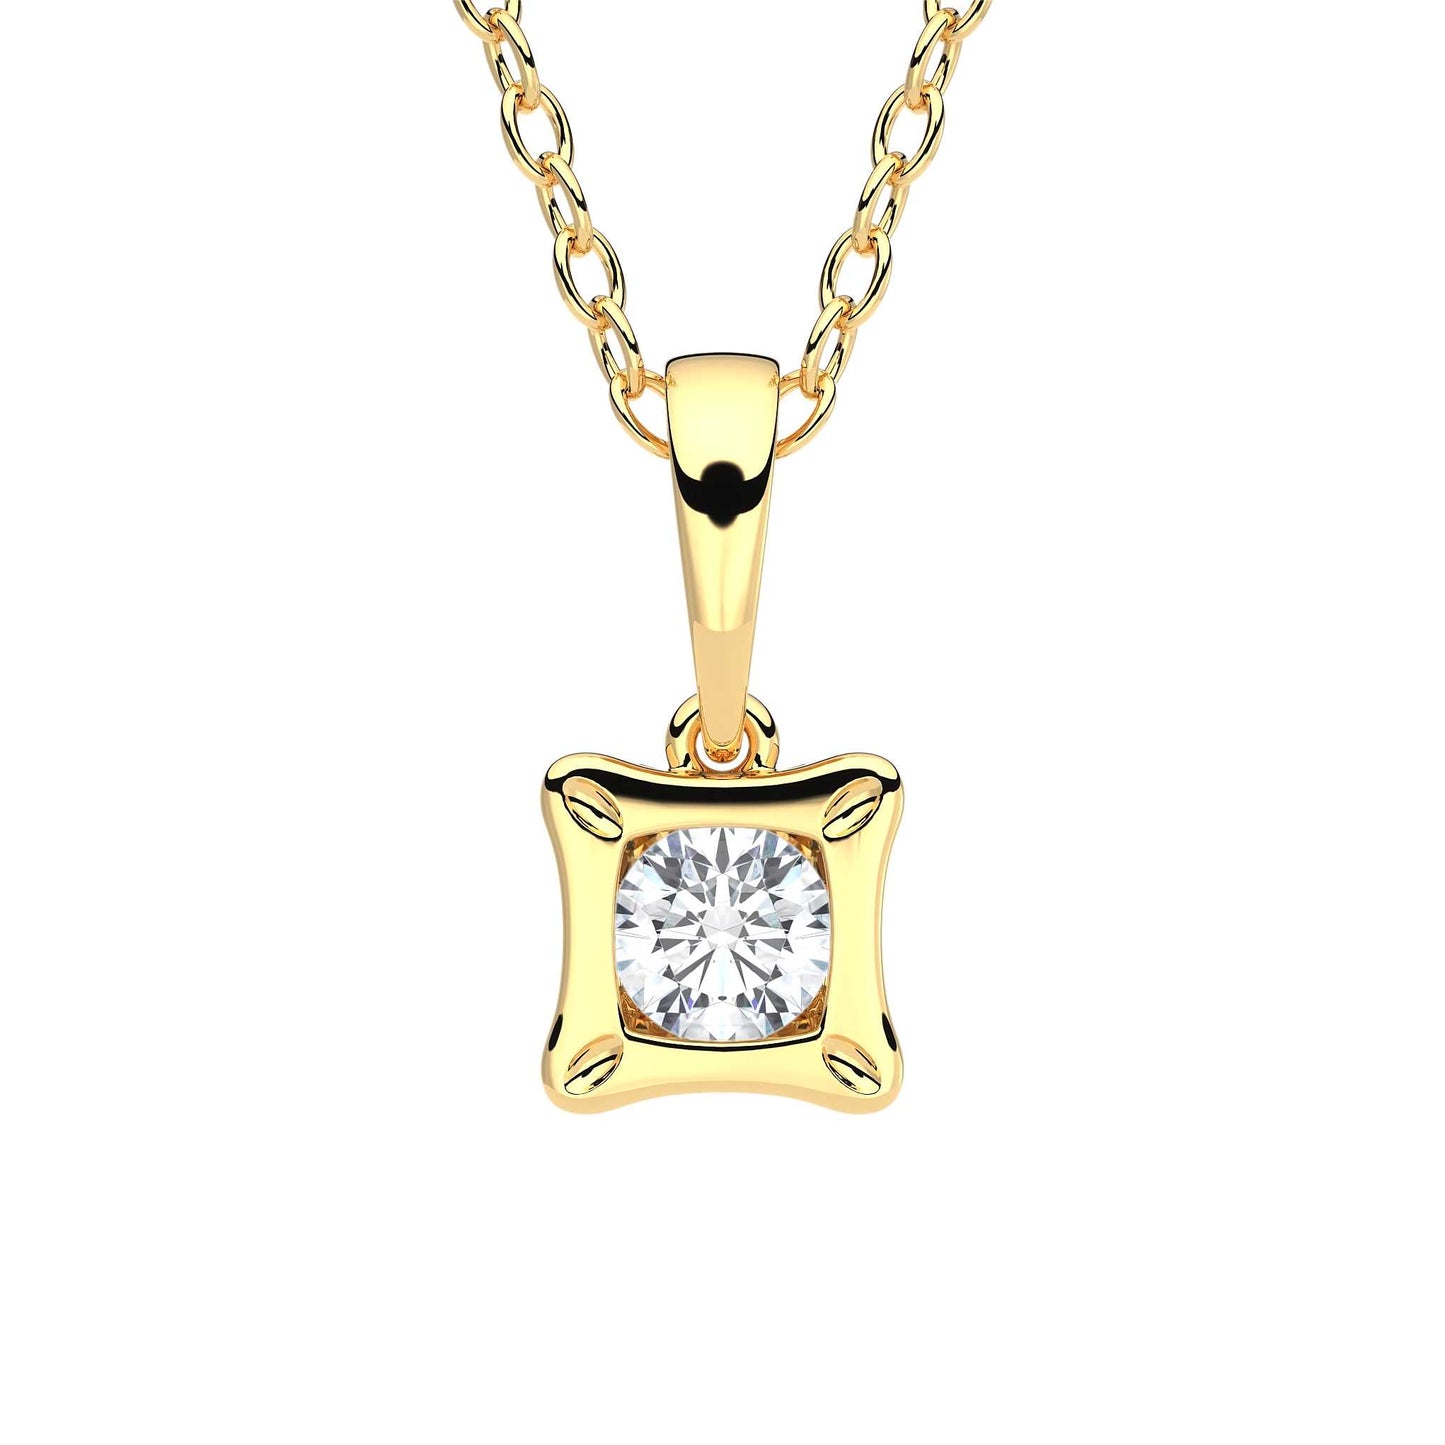 Suokko Timanttikorut -riipus keltakultaa, jossa istutettuna yksi timantti. Tuotekoodi KP05922